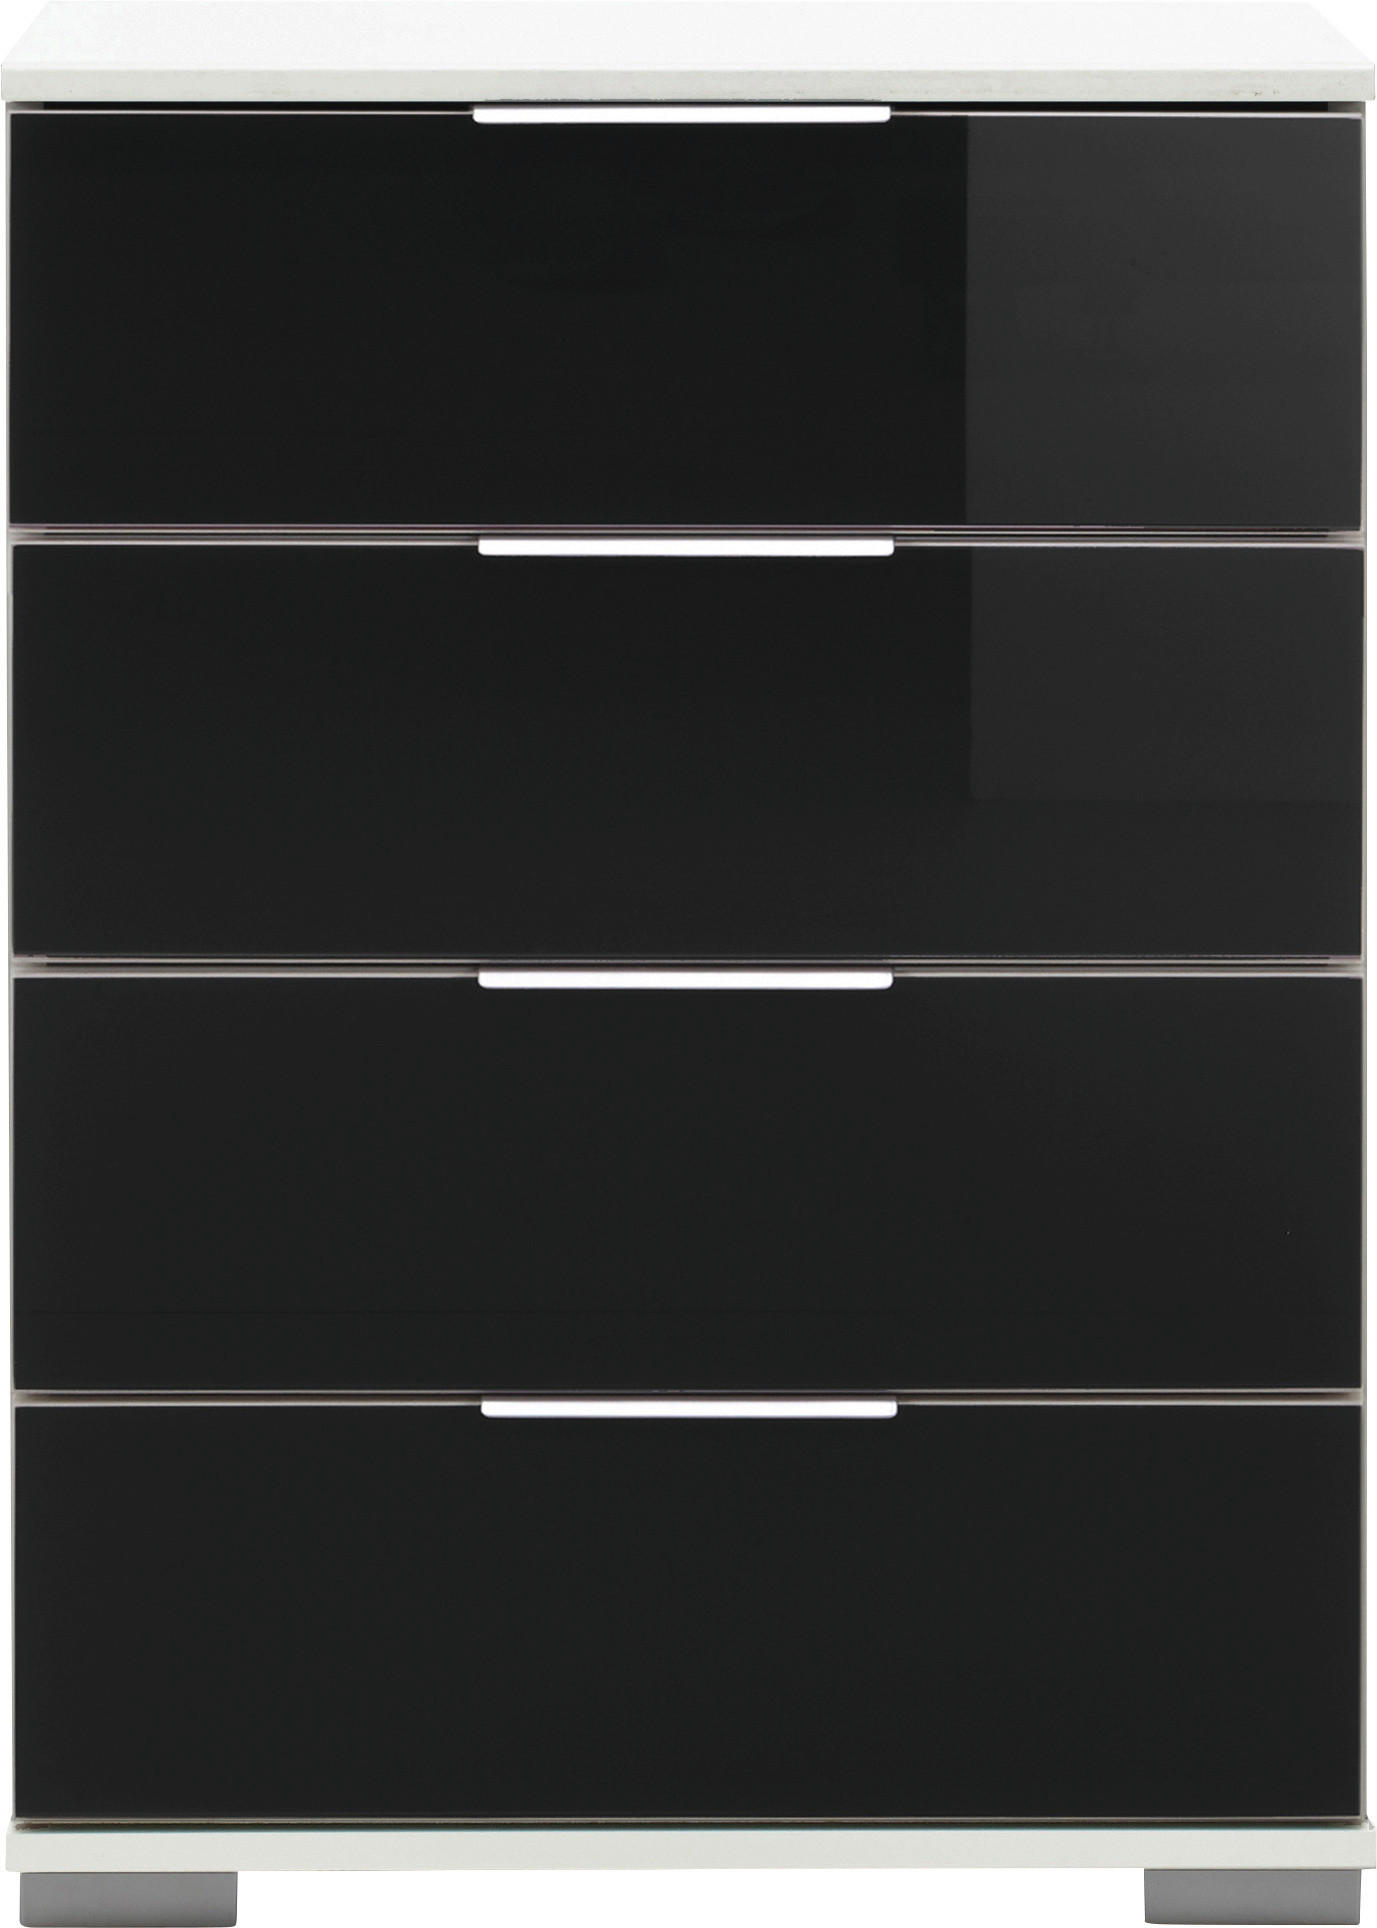 NACHTSCHRANK Schwarz, Weiß  - Chromfarben/Alufarben, Design, Glas/Kunststoff (52/74/38cm) - Livetastic